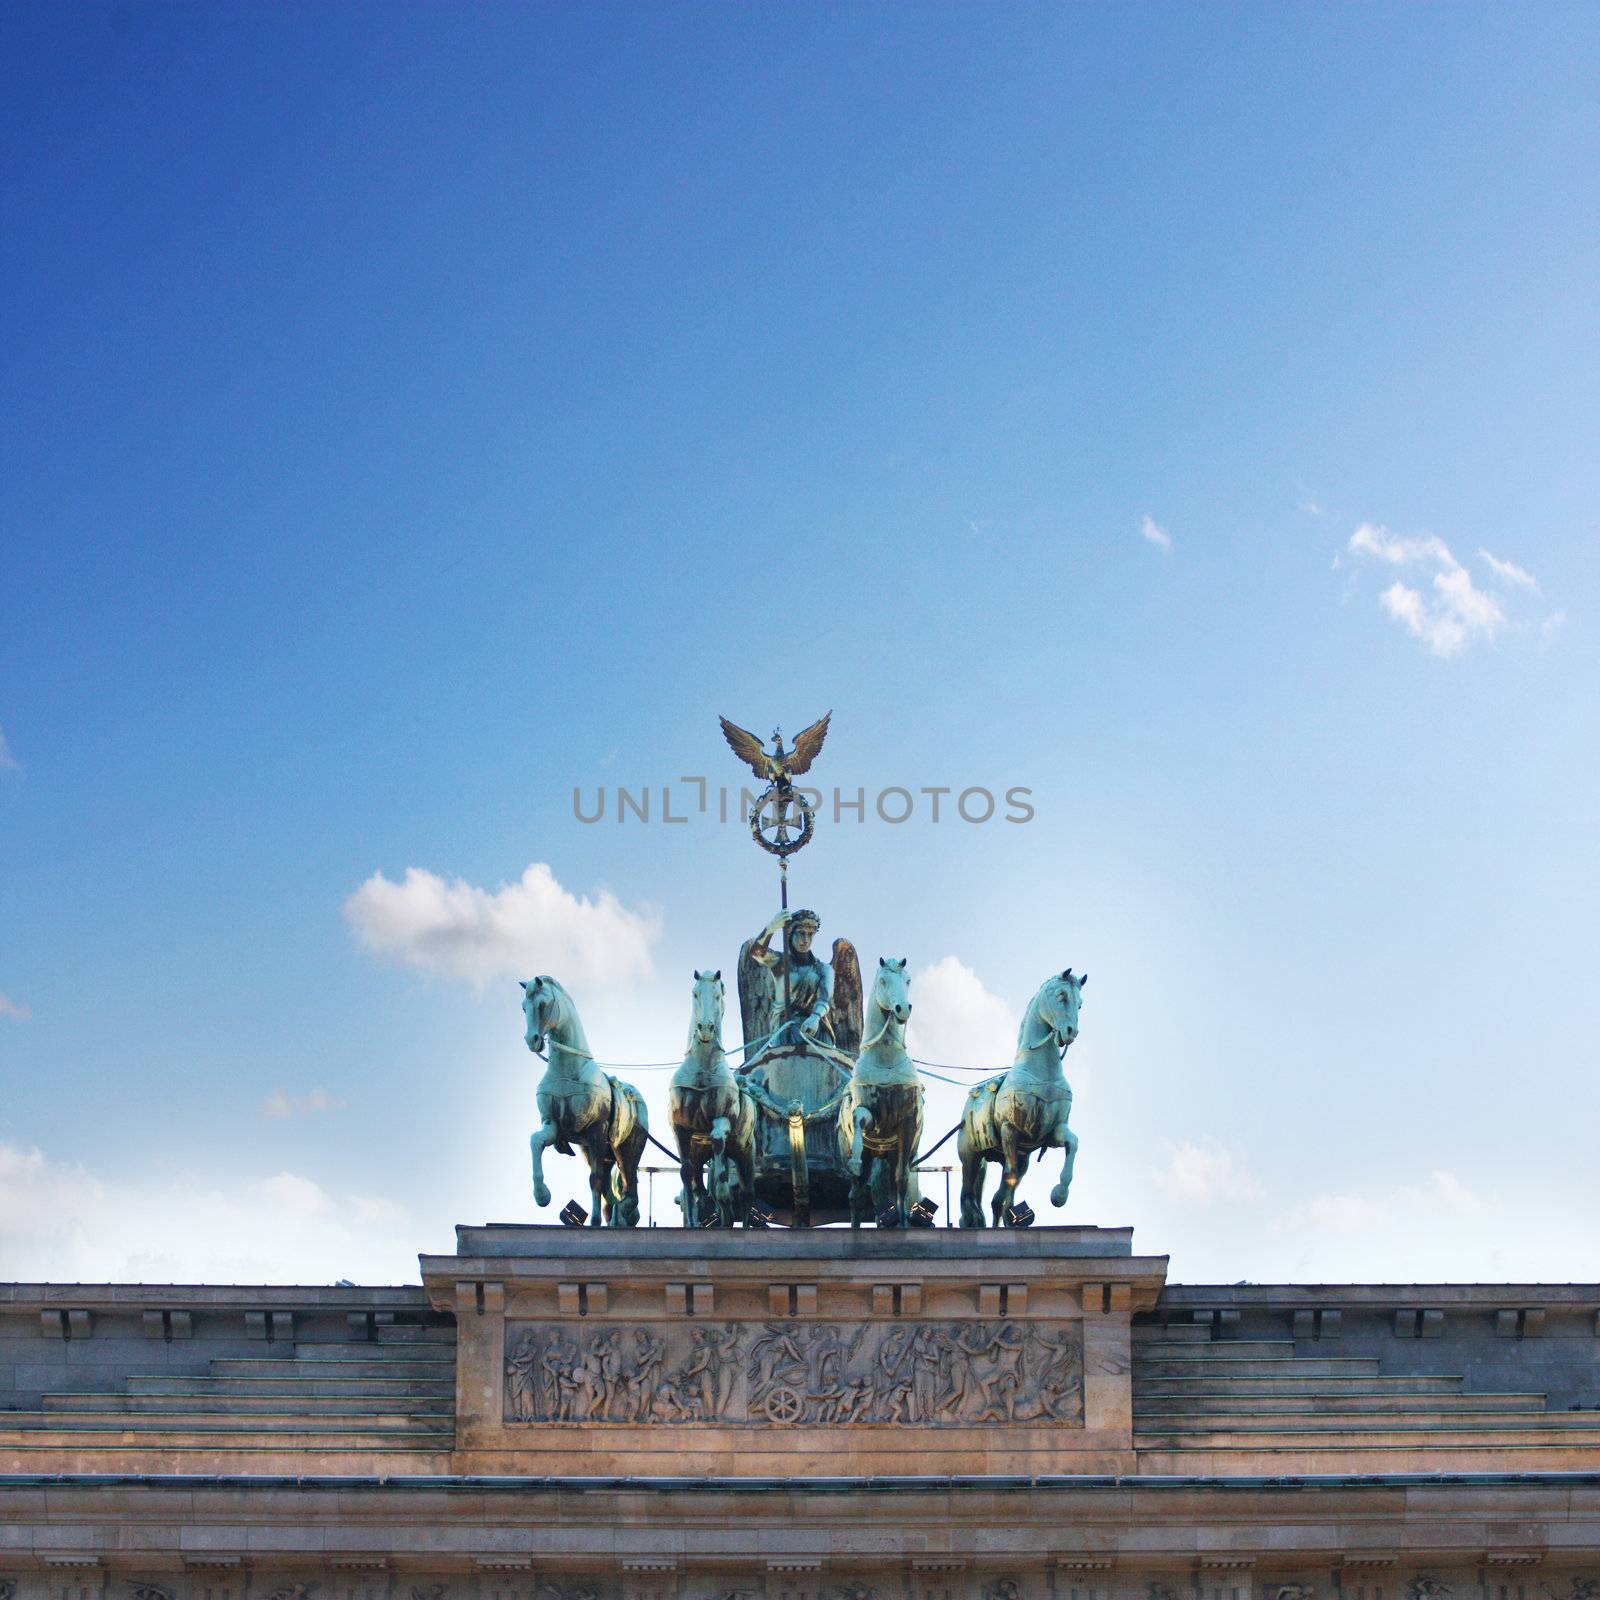 berlin symbol by photochecker